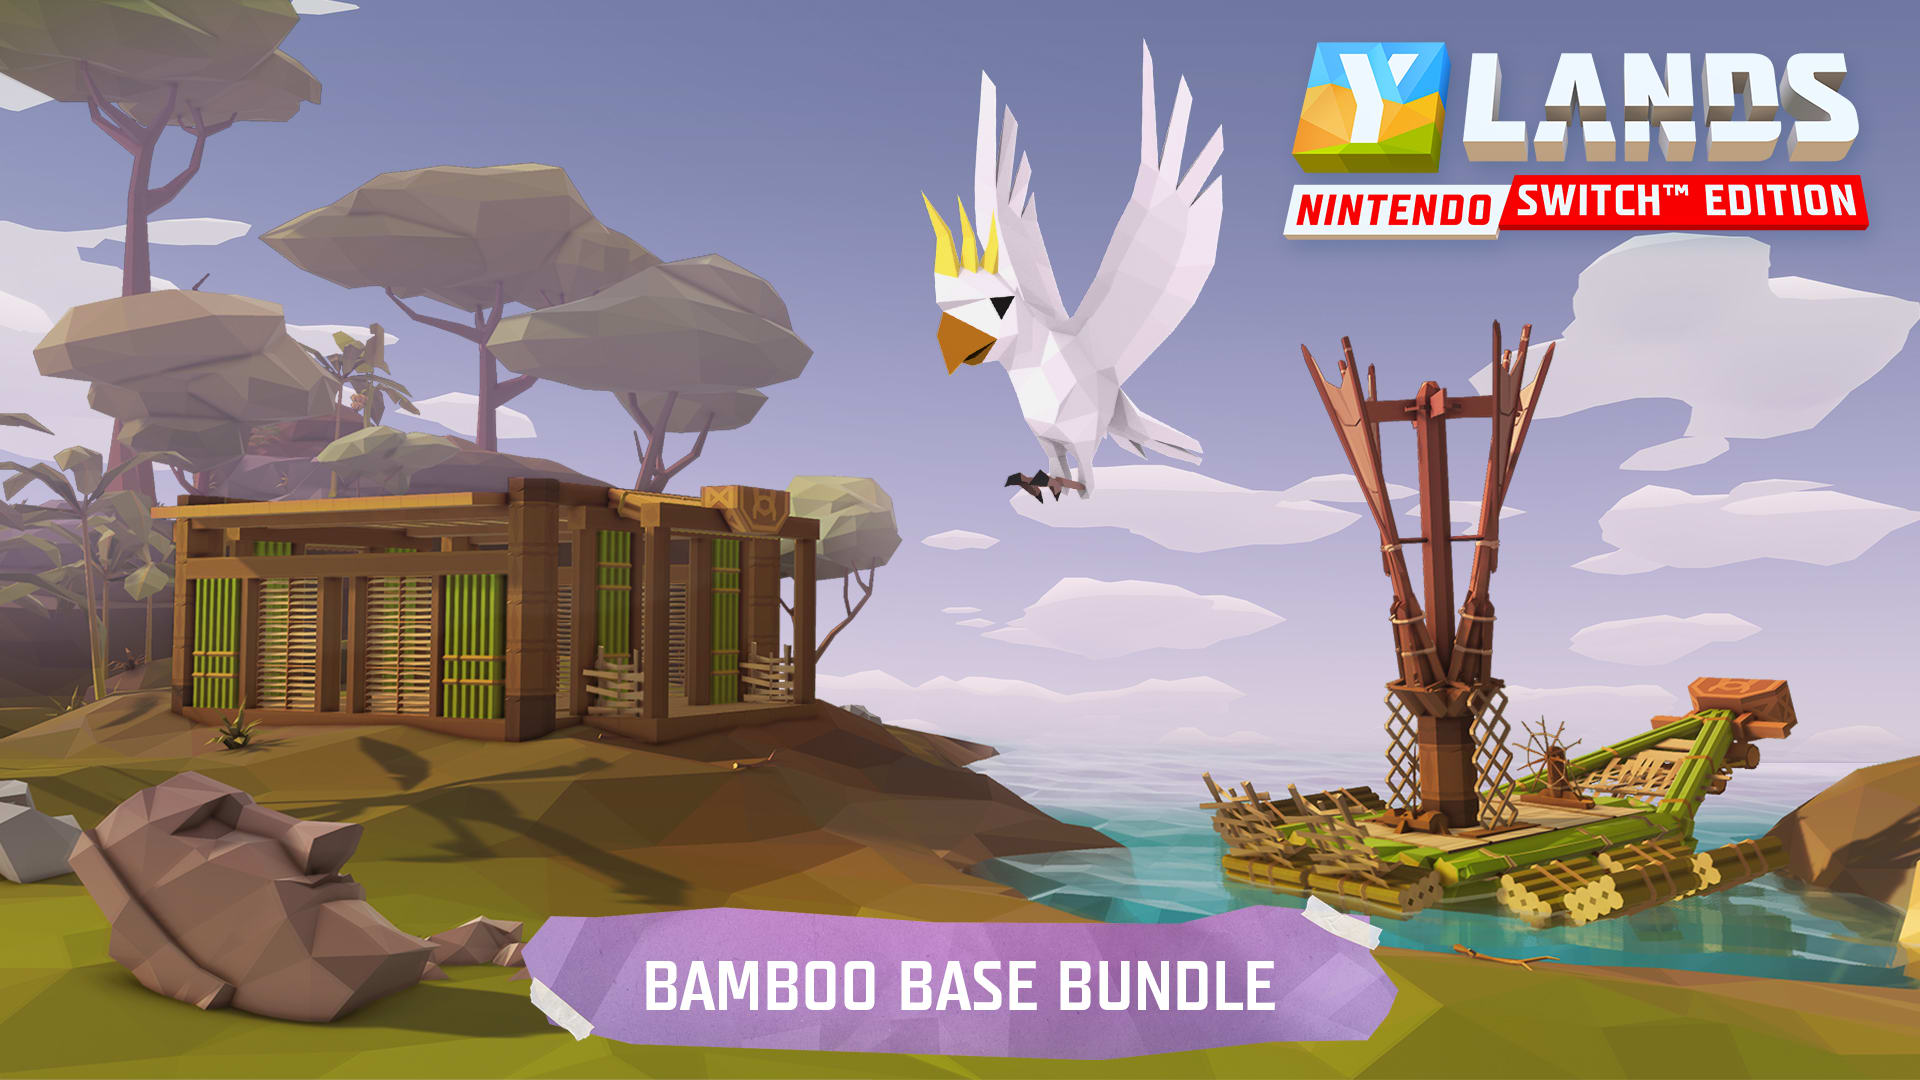 Ylands: Nintendo Switch™ Edition - Bamboo Base Bundle